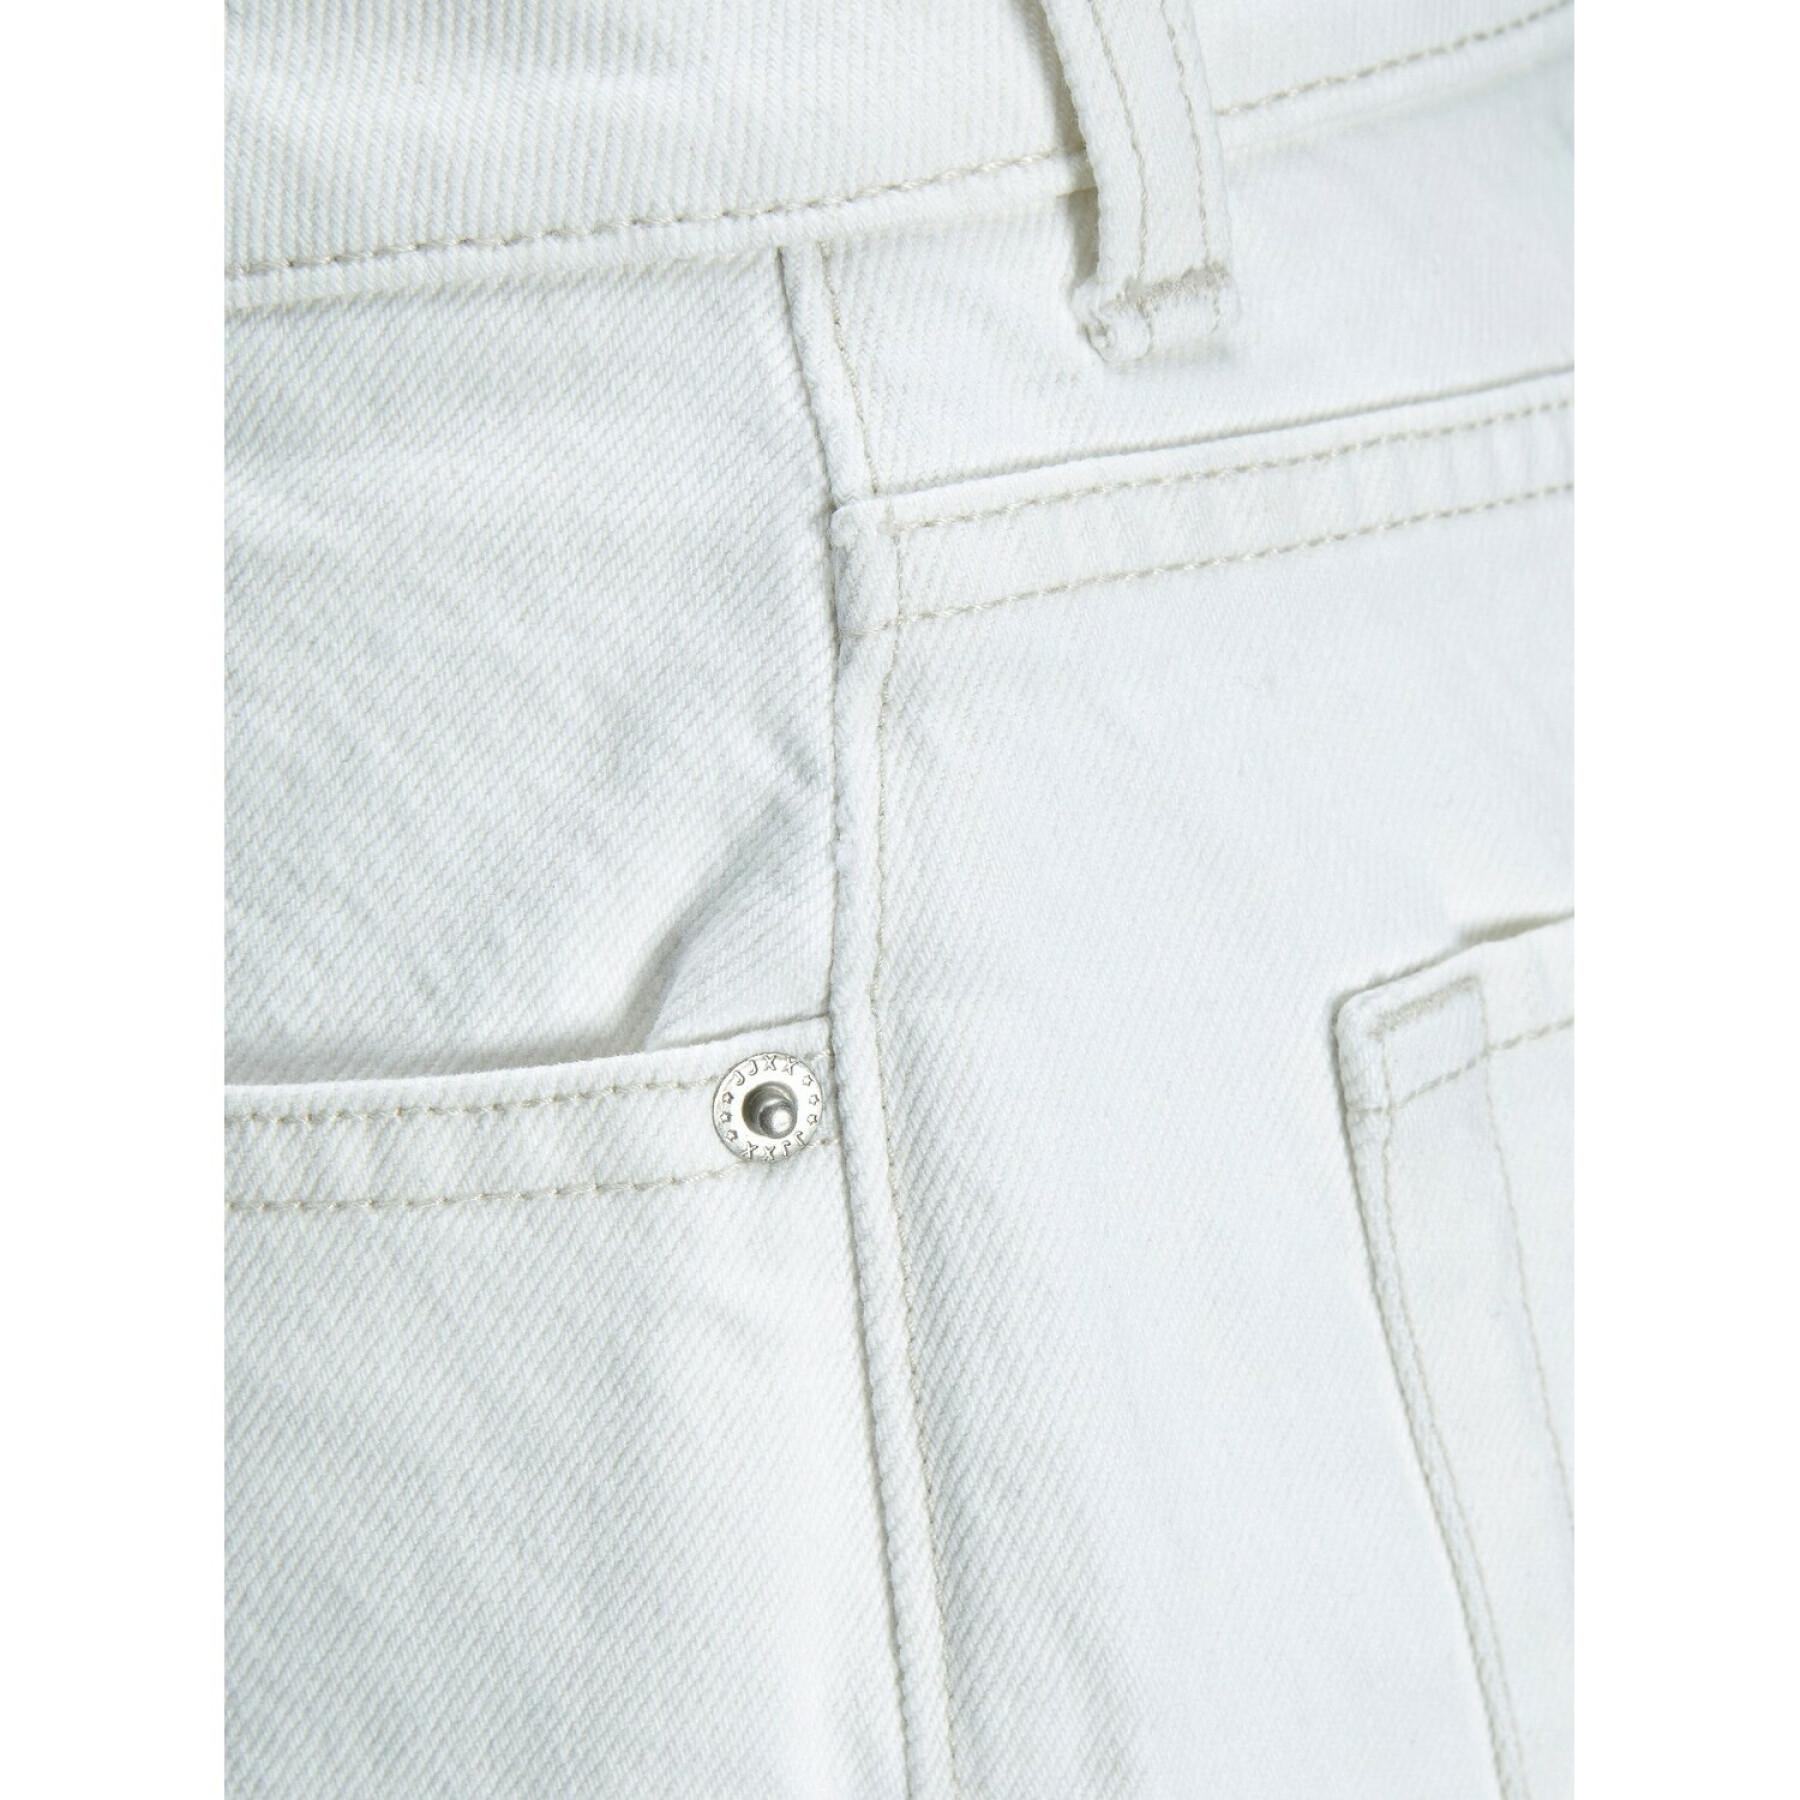 Jeans da donna JJXX tokyo wide nr6012